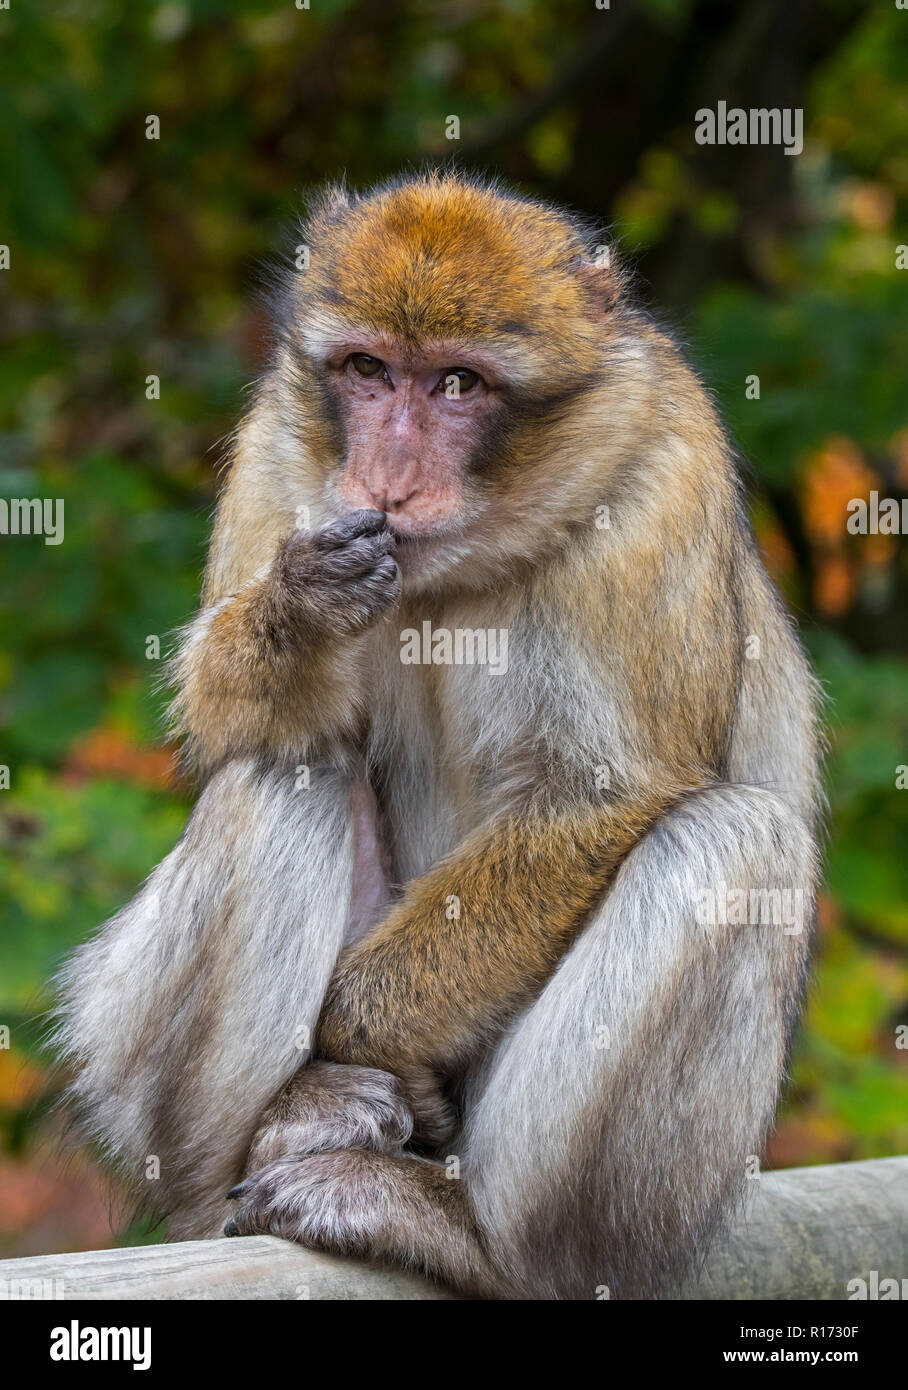 Barbary macaque / Barbary ape / magot (Macaca sylvanus) native to the Atlas Mountains of Algeria, Morocco and Gibraltar Stock Photo